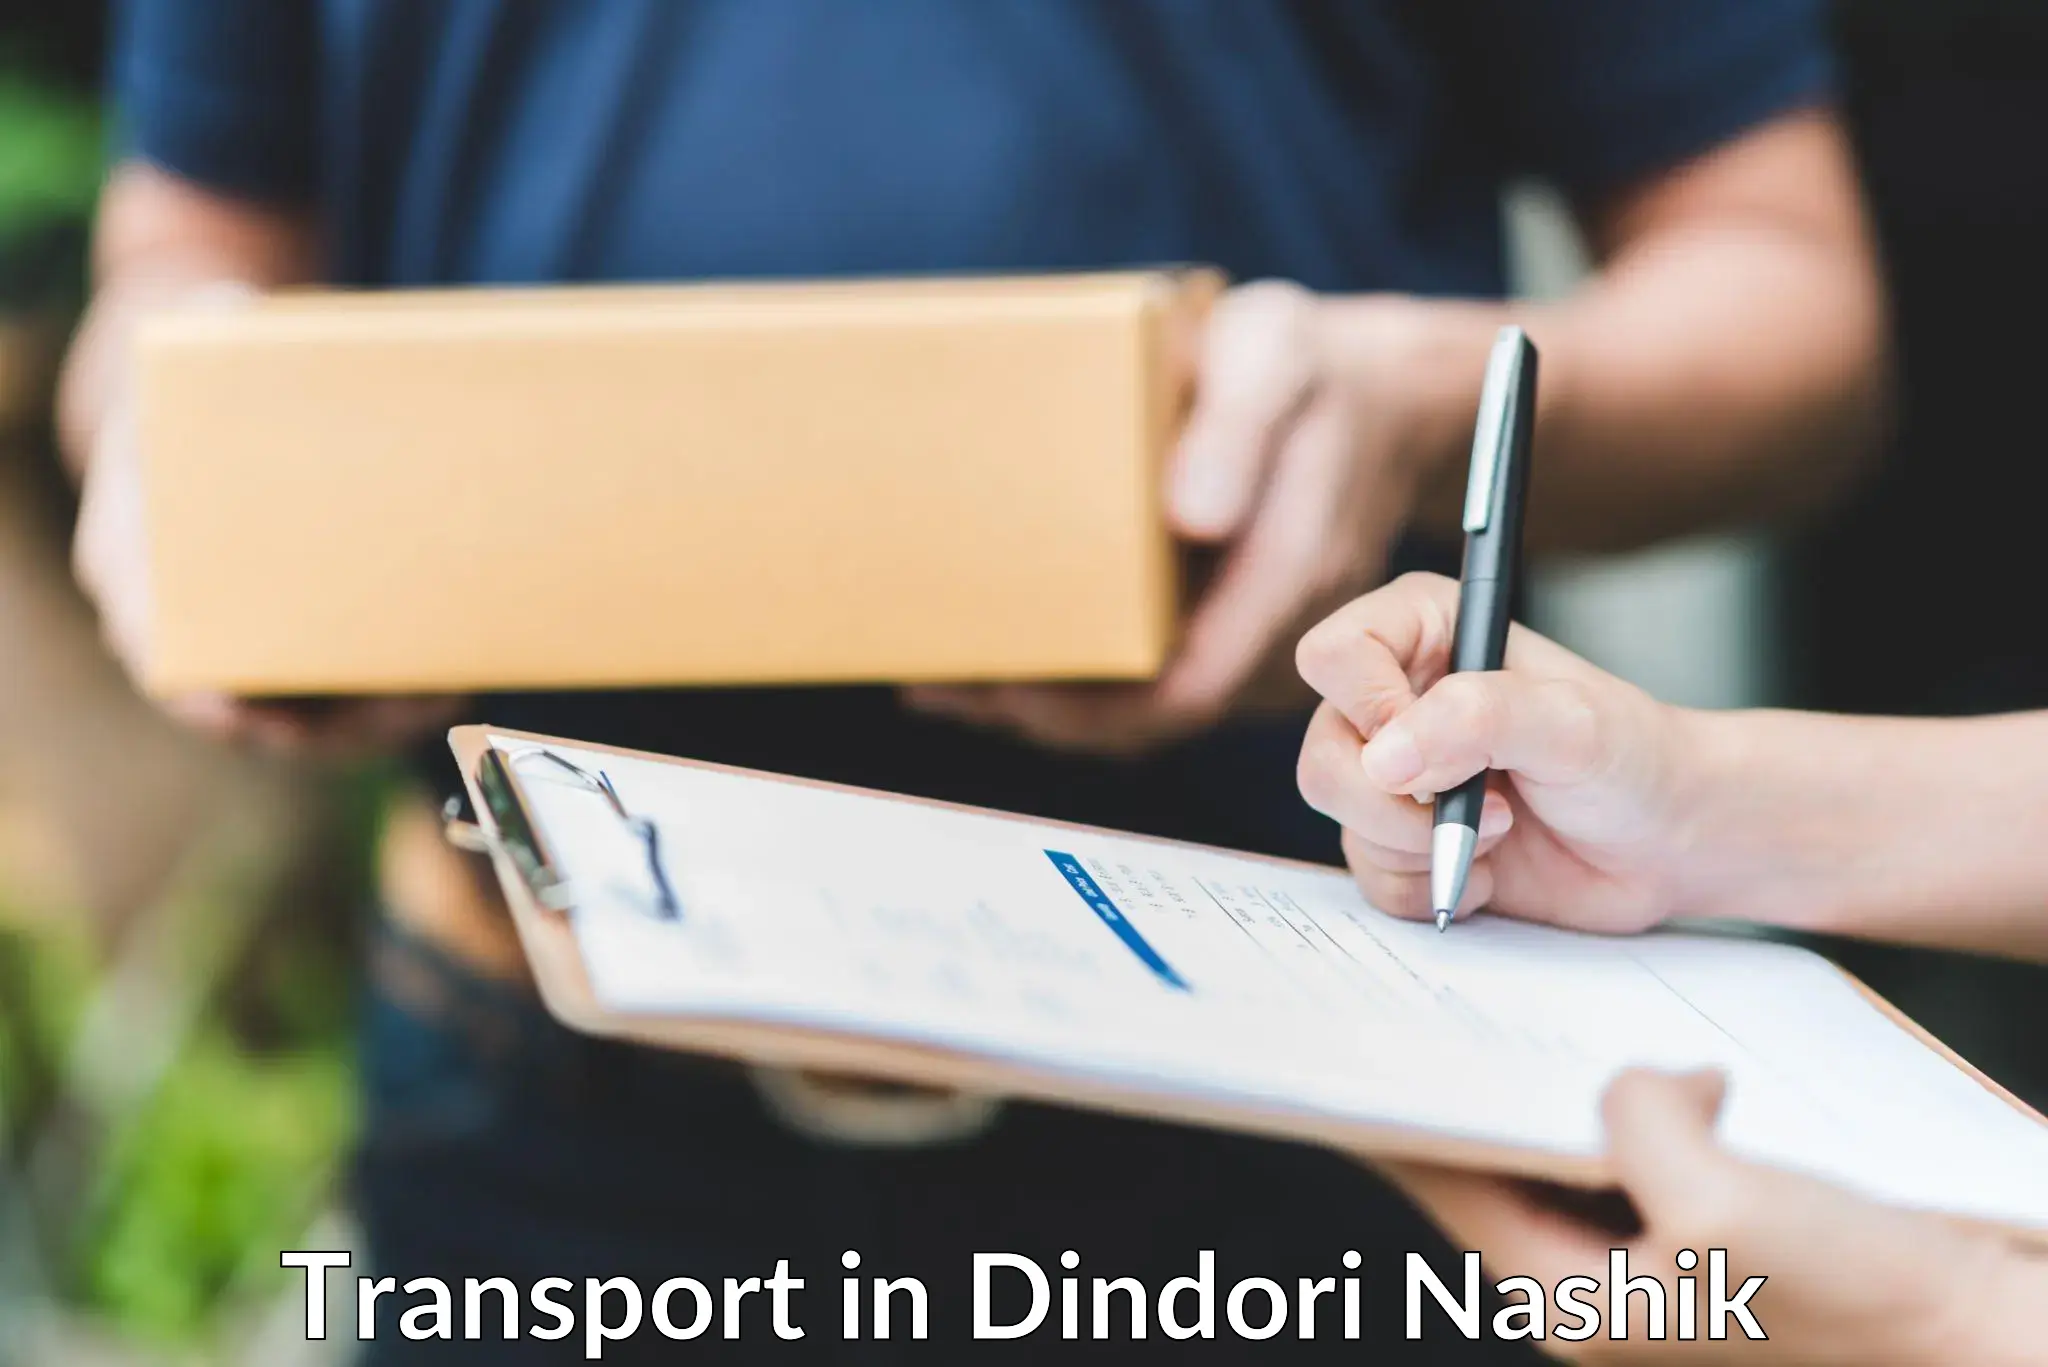 Transport in sharing in Dindori Nashik